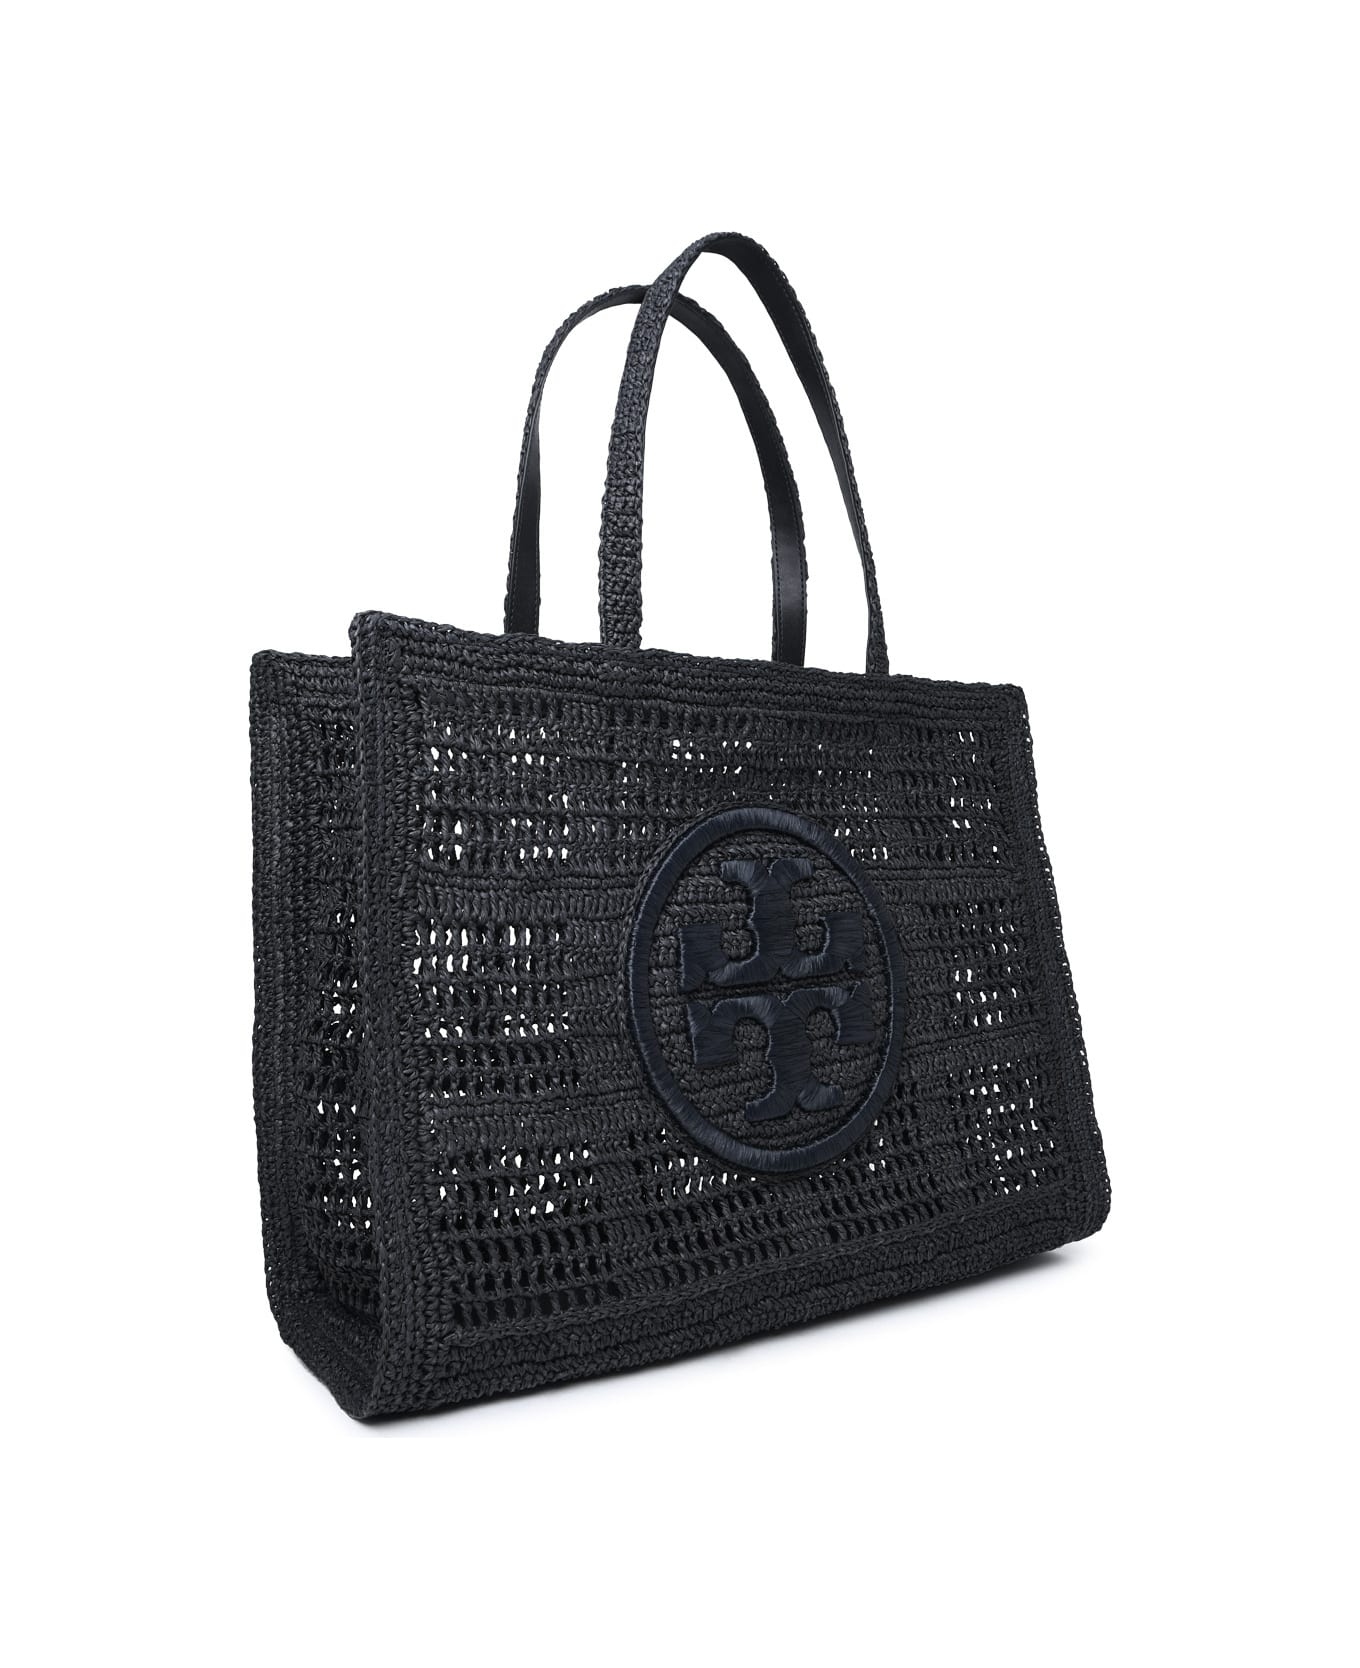 Tory Burch 'ella' Large Shopping Bag In Black Raffia - Black